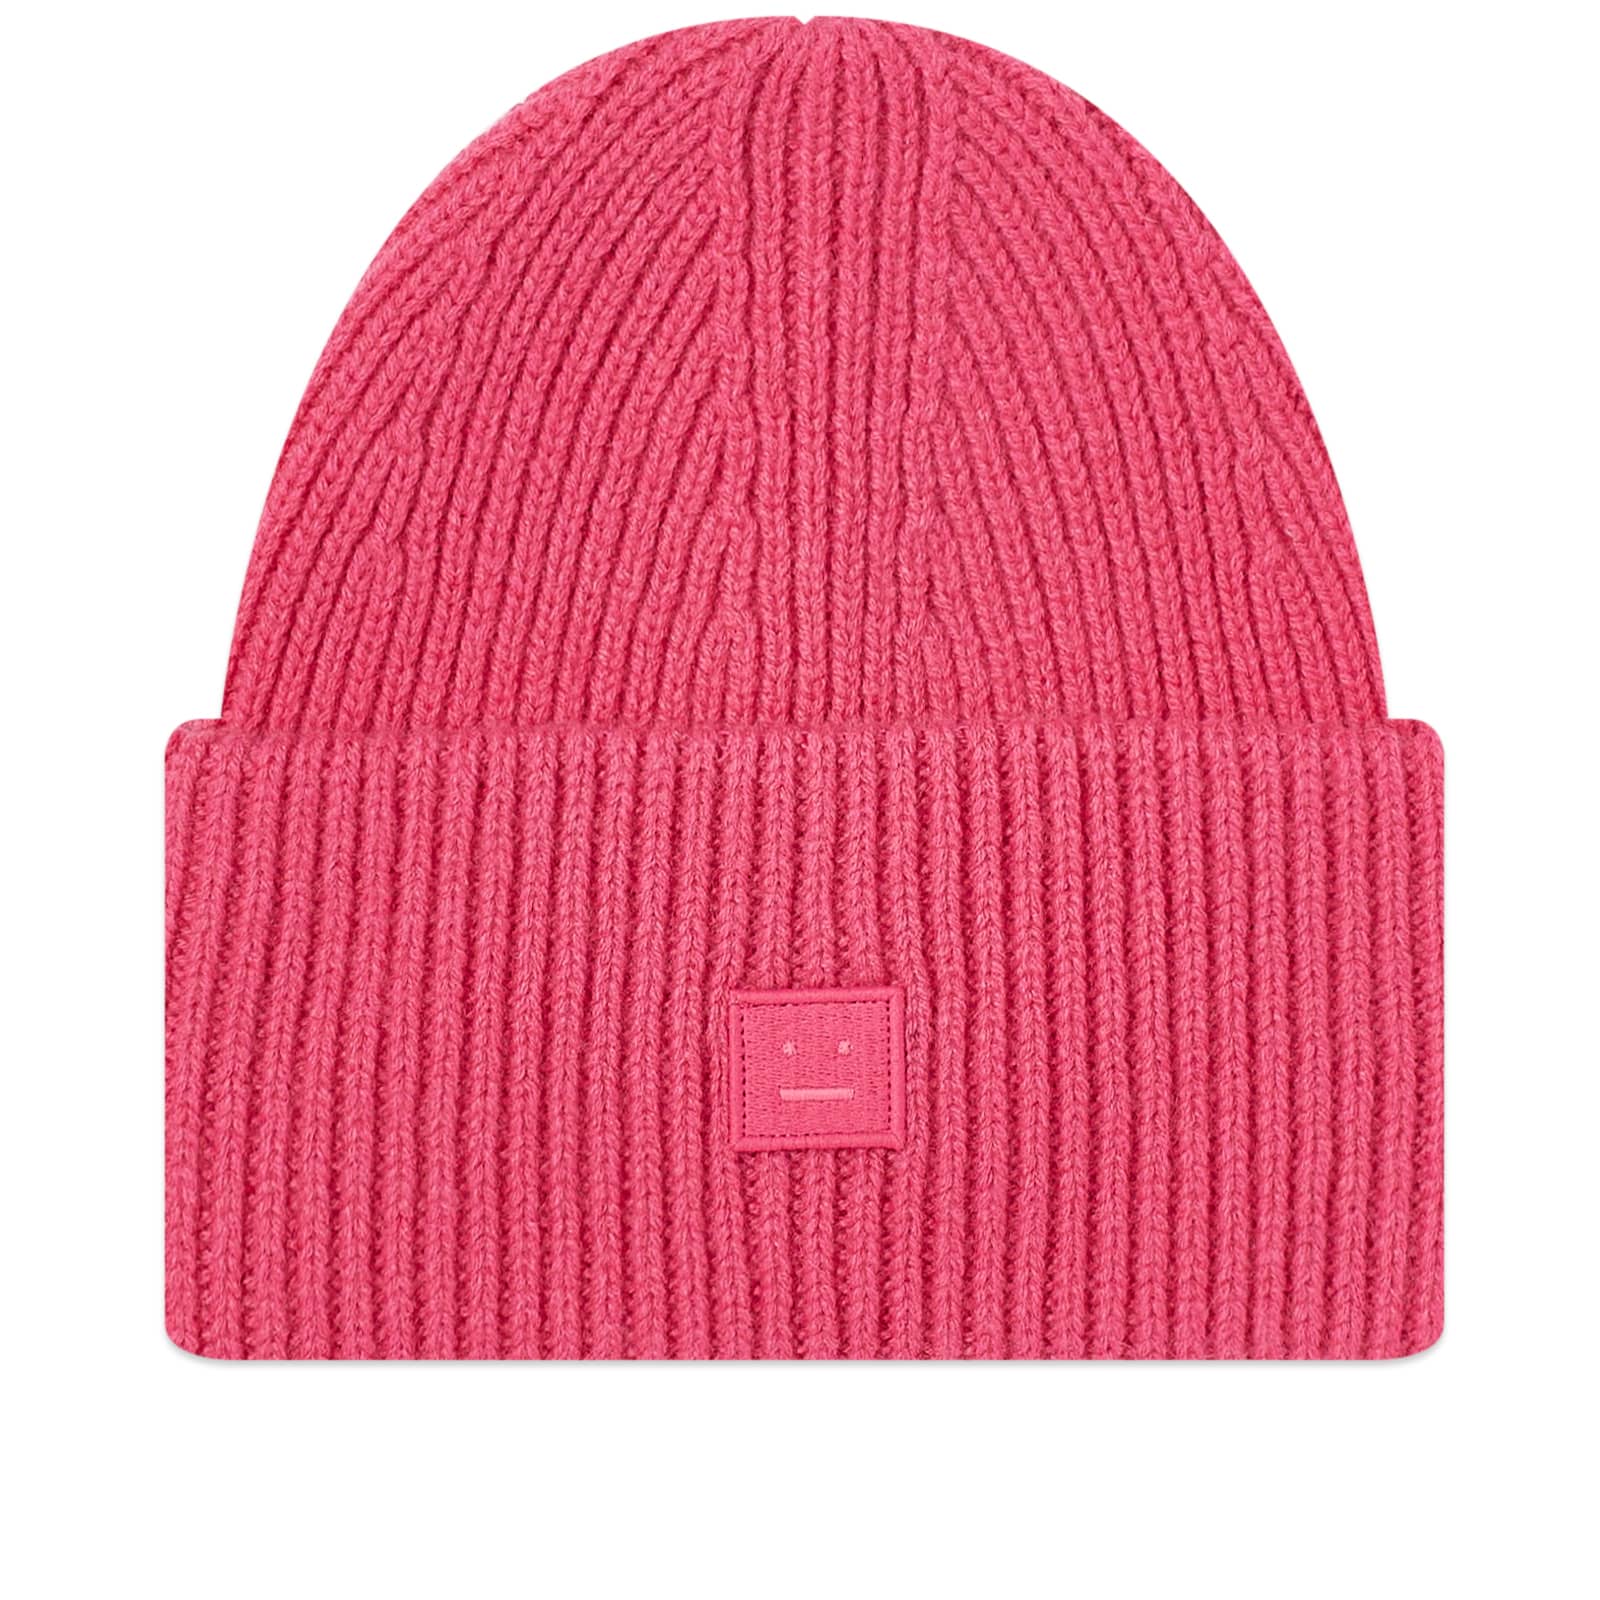 Шапка Acne Studios Pana Face, цвет Bright Pink шапка acne studios kids logo beanie красный светло красный